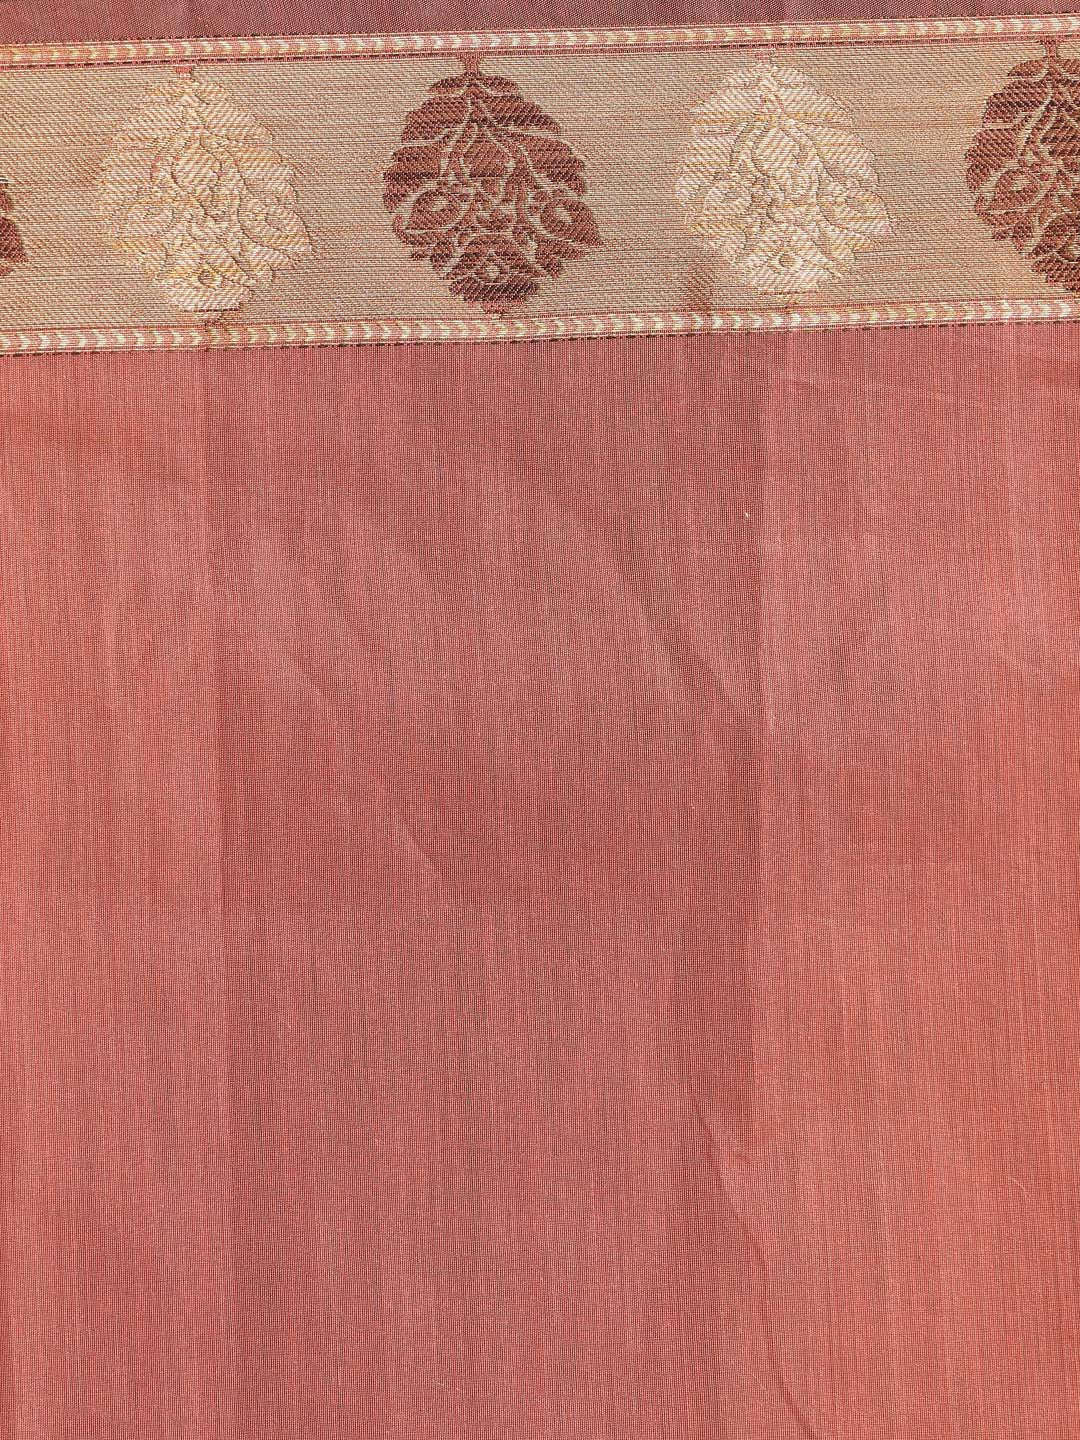 Indethnic Banarasi Rust Solid Work Wear Saree - Saree Detail View